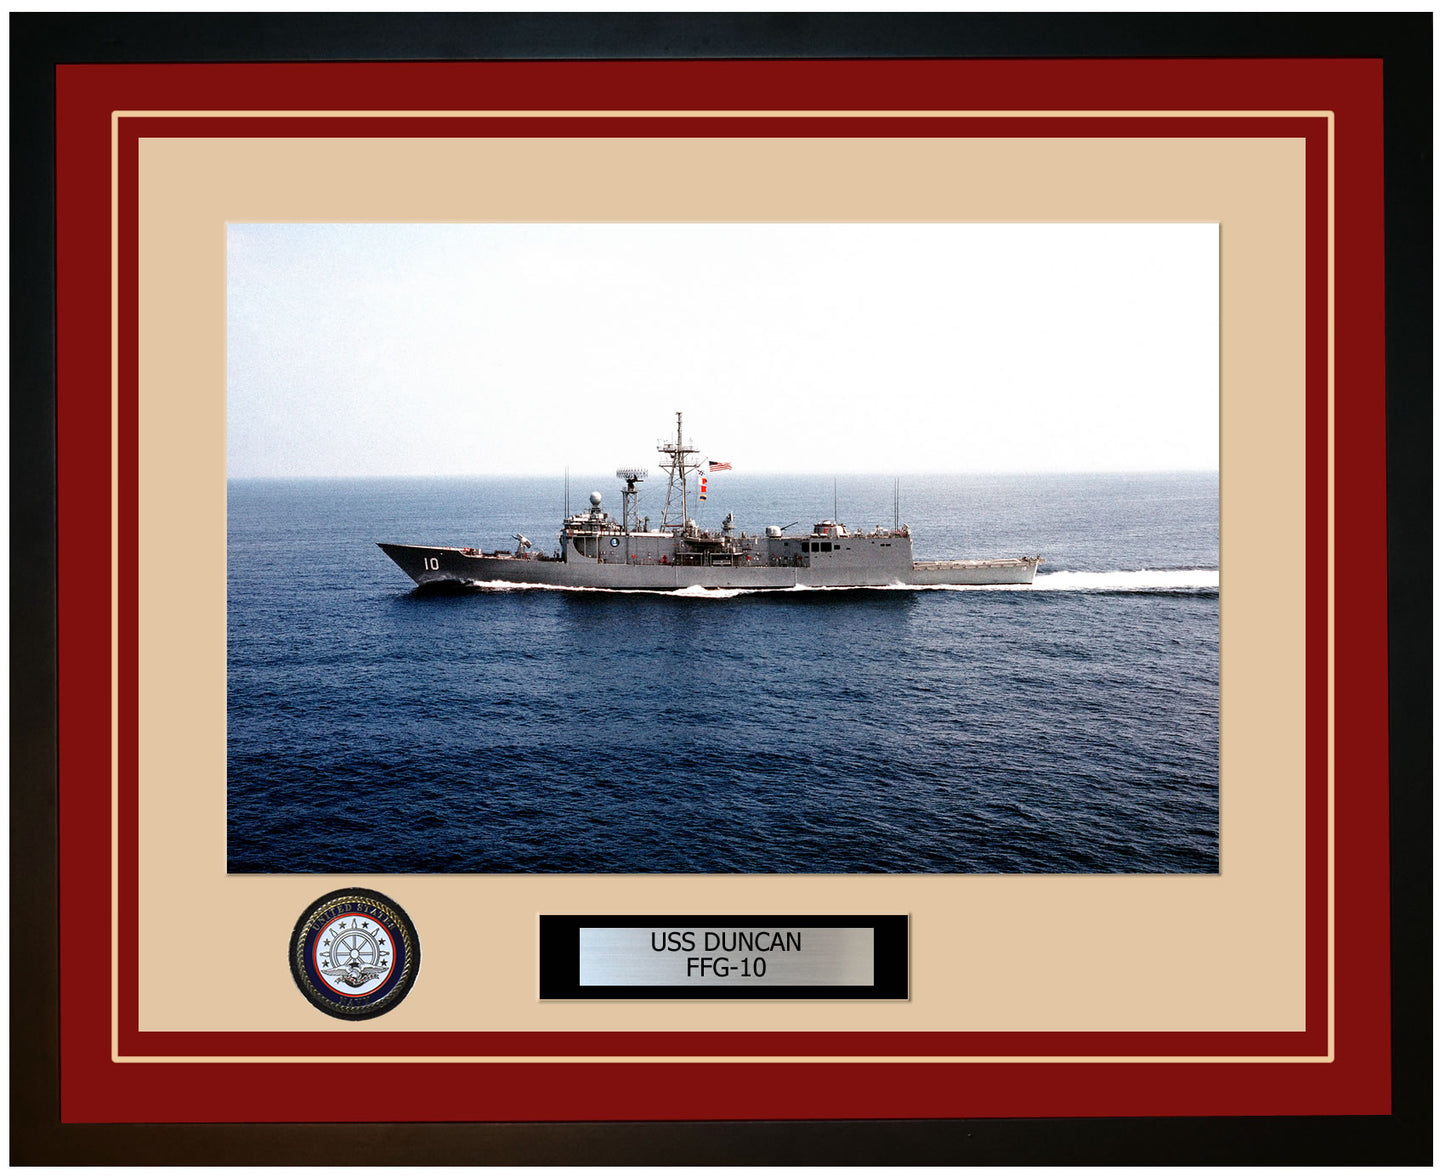 USS DUNCAN FFG-10 Framed Navy Ship Photo Burgundy